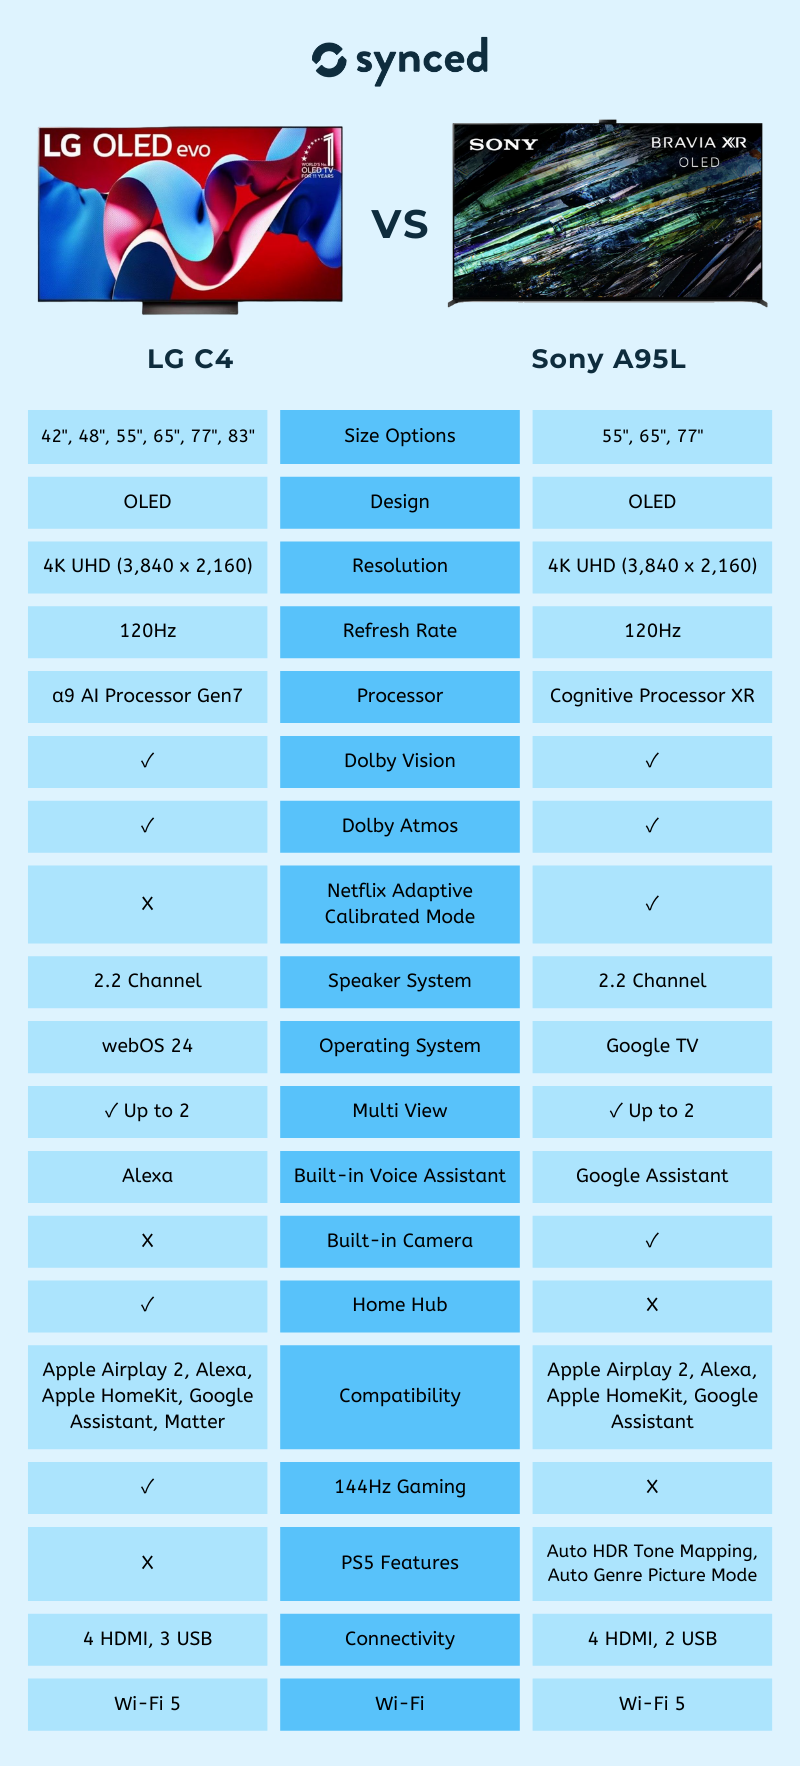 LG C4 vs Sony A95L